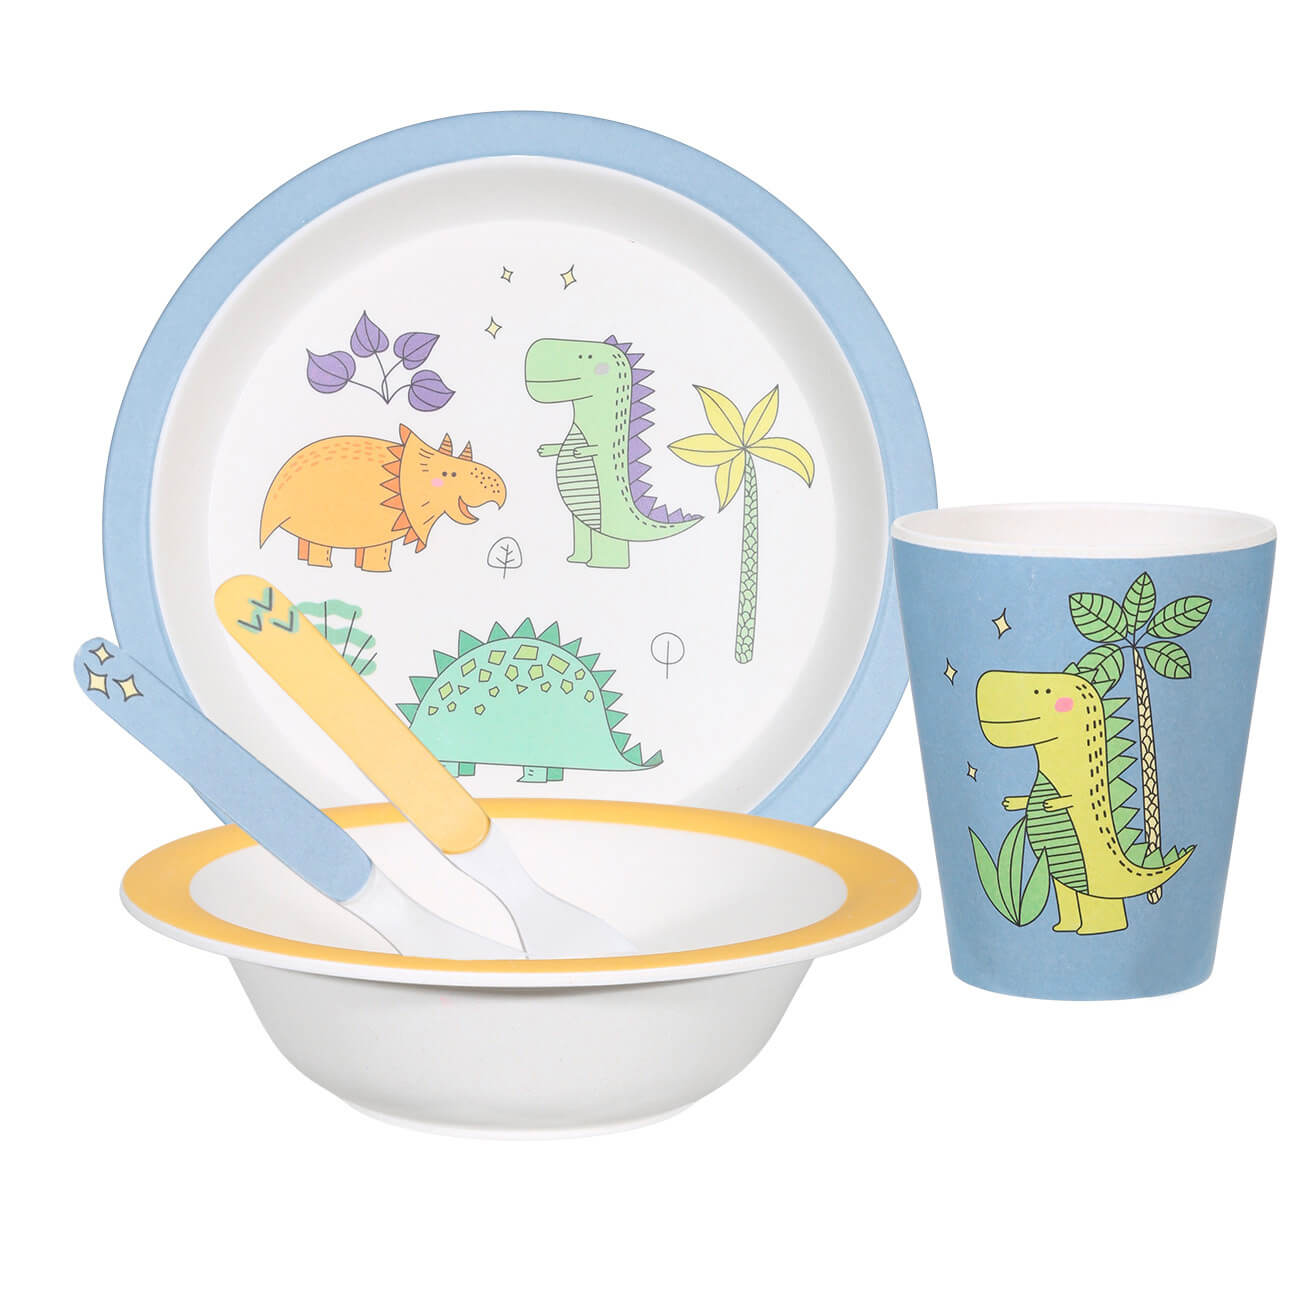 Набор посуды, детский, 5 пр, бамбук, желто-голубой, Динозавр, Dino ростомер динозавр ханоянц е п